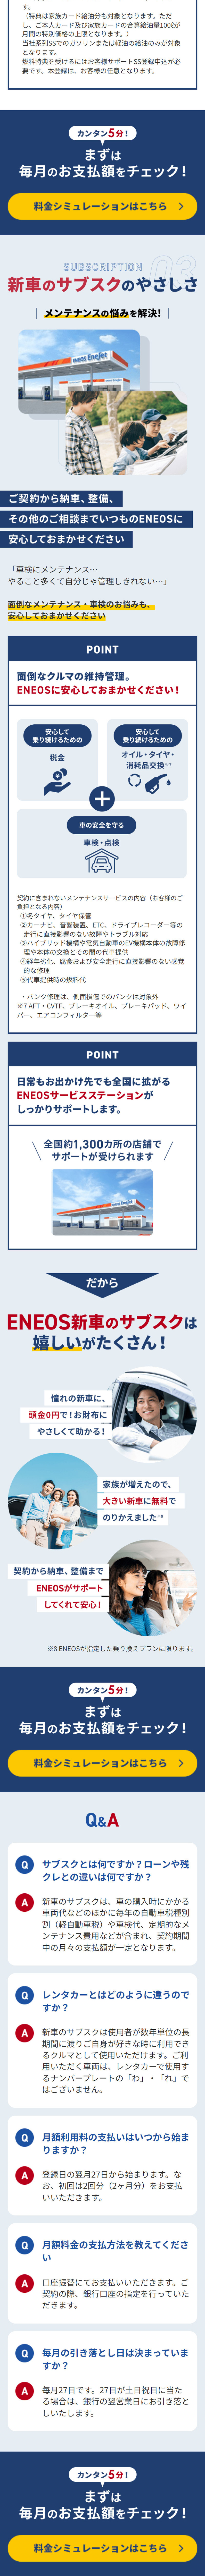 ENEOS 新車のサブスク_sp_2